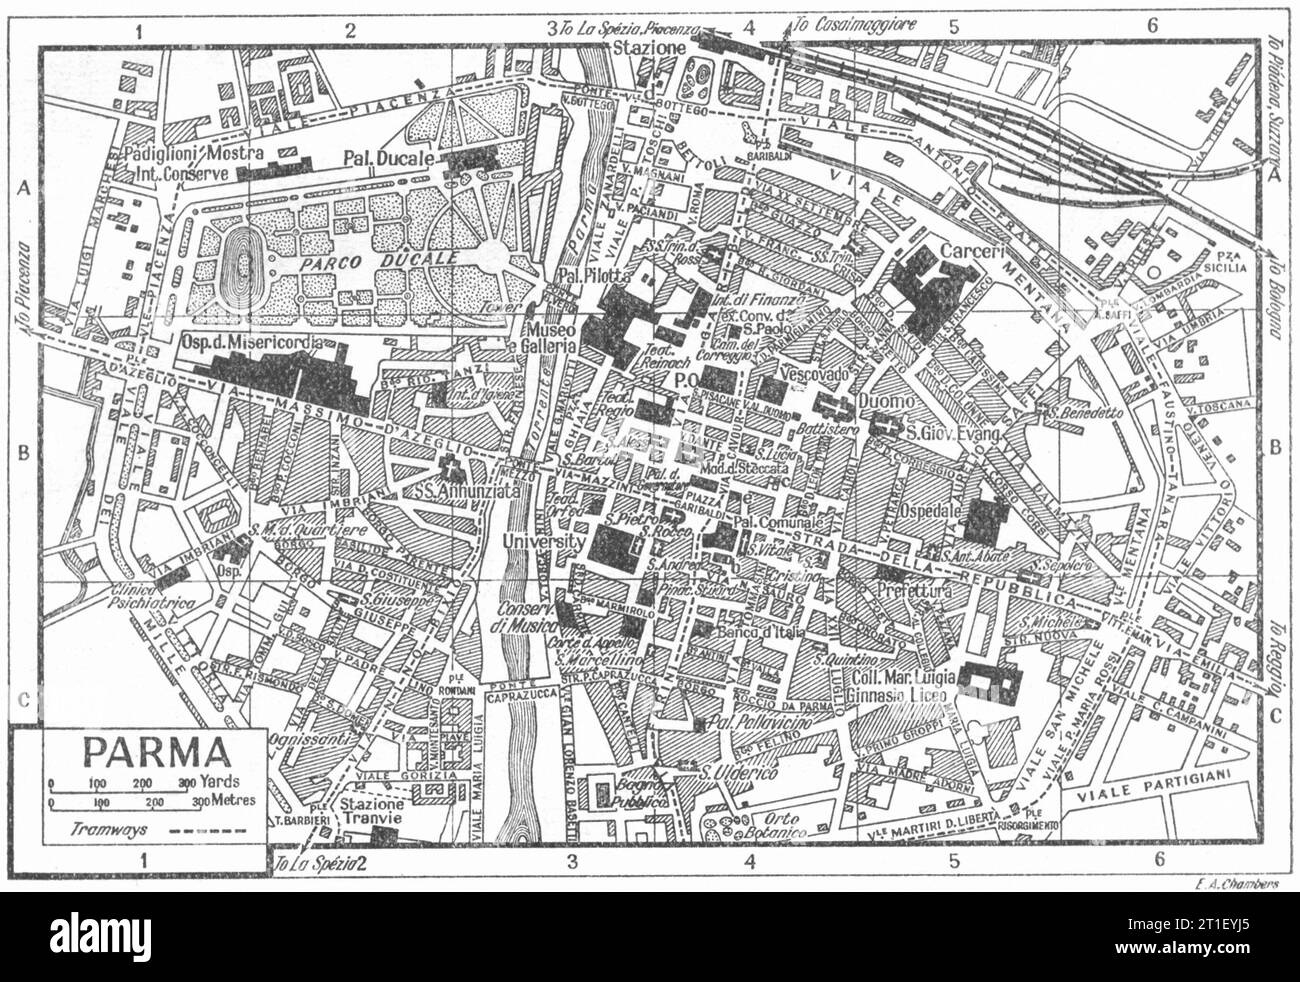 Piano città DI PARMA. Italia 1953 vecchia mappa d'epoca Foto Stock